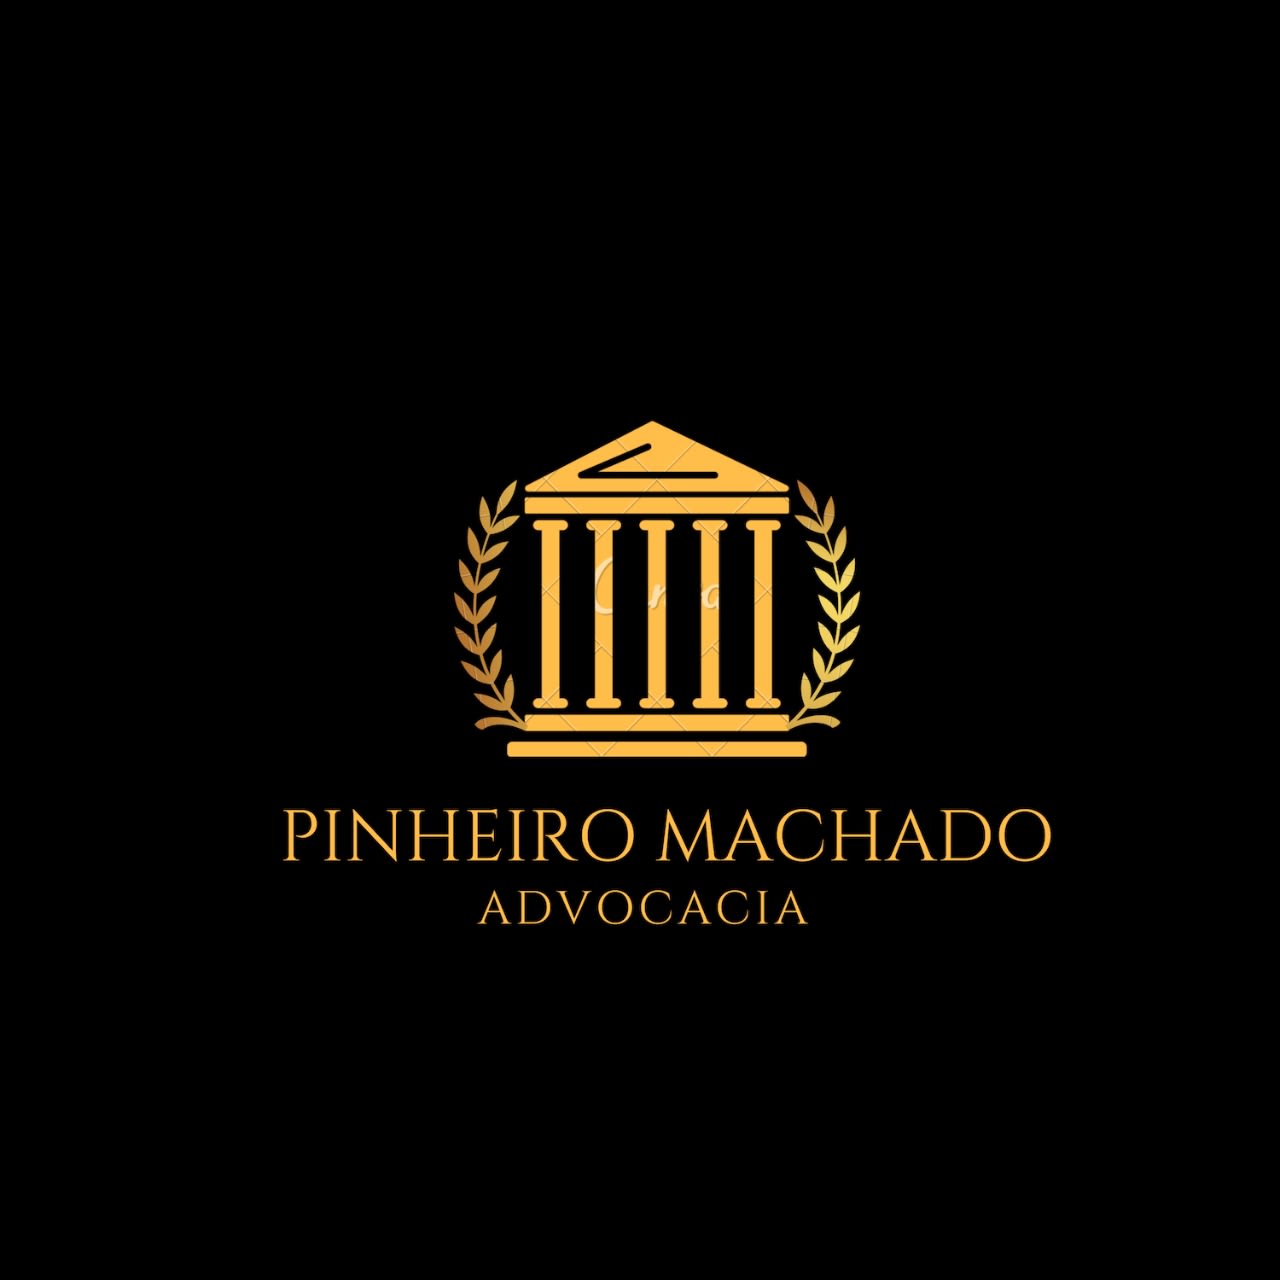 Pinheiro Machado Advocacia